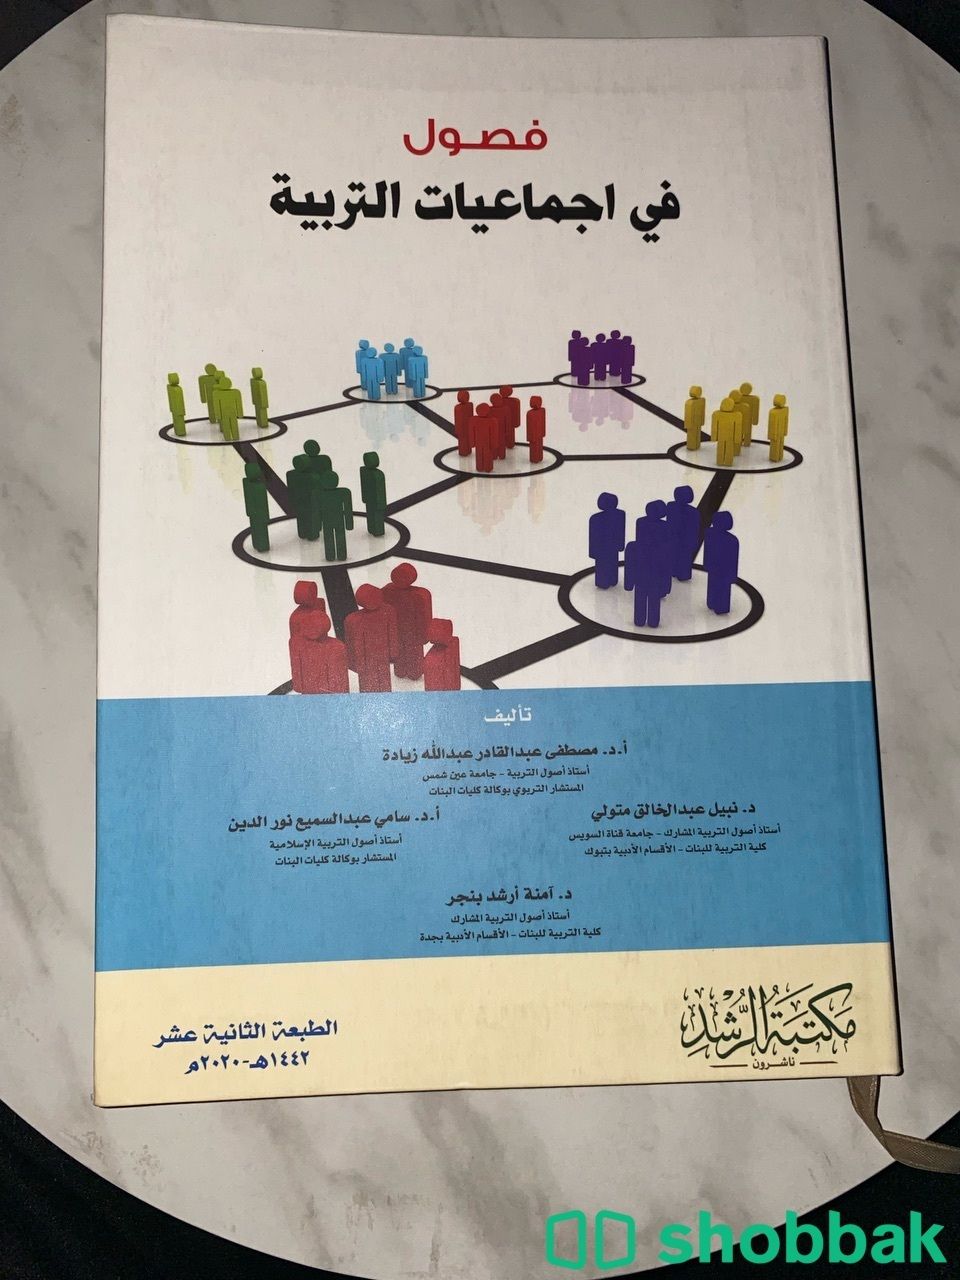 كتاب فصول في اجماعيات التربية  Shobbak Saudi Arabia